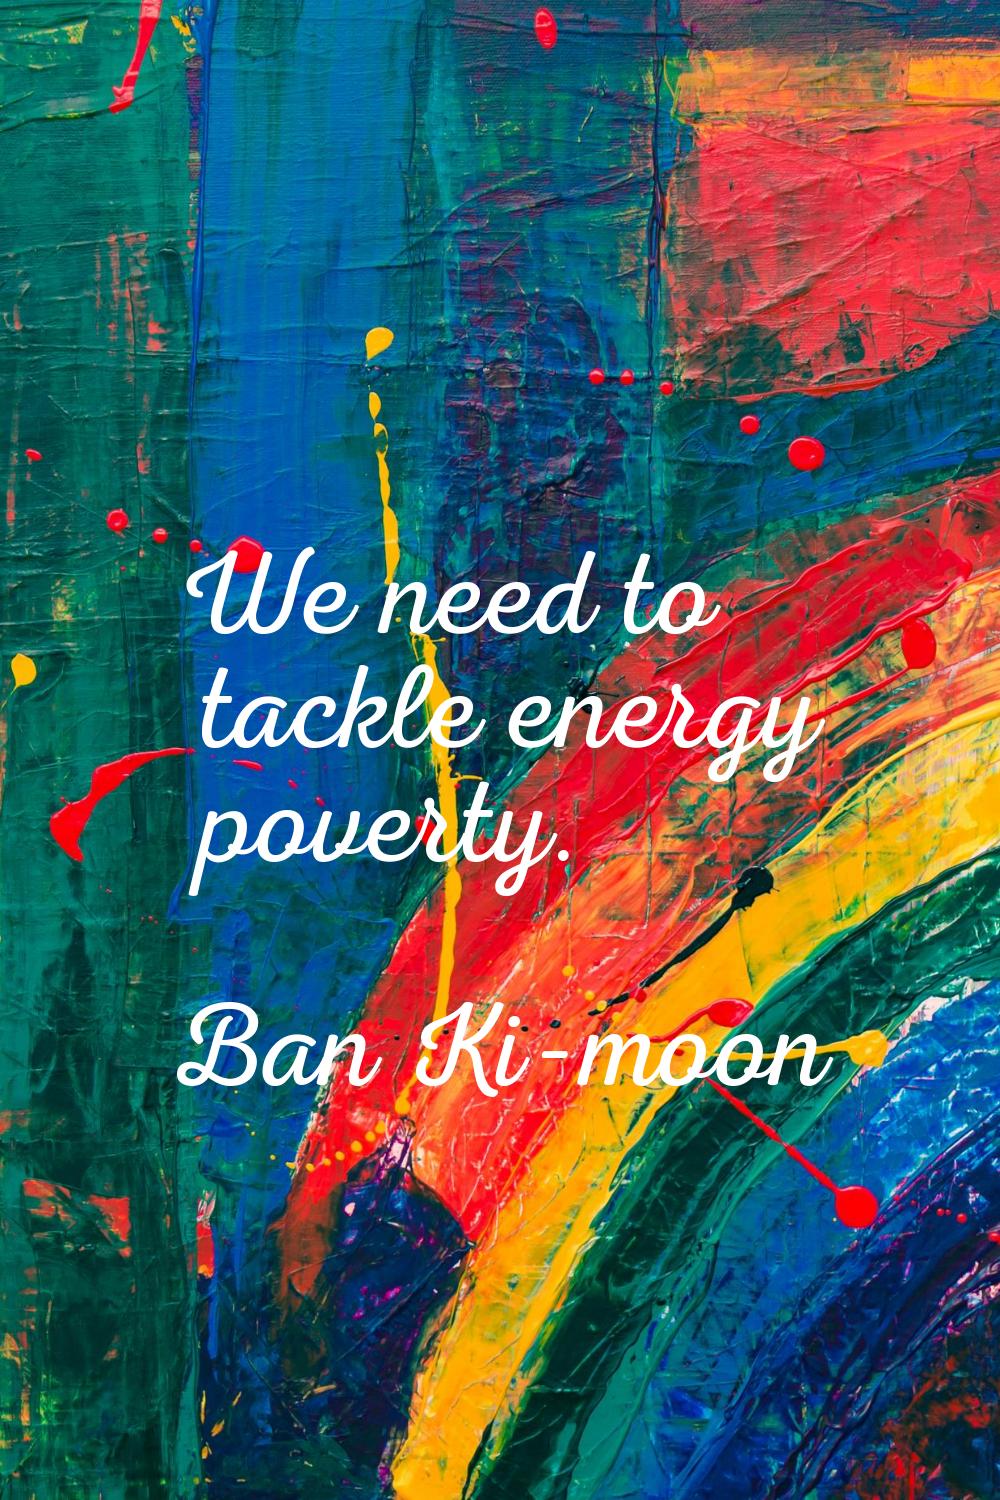 We need to tackle energy poverty.